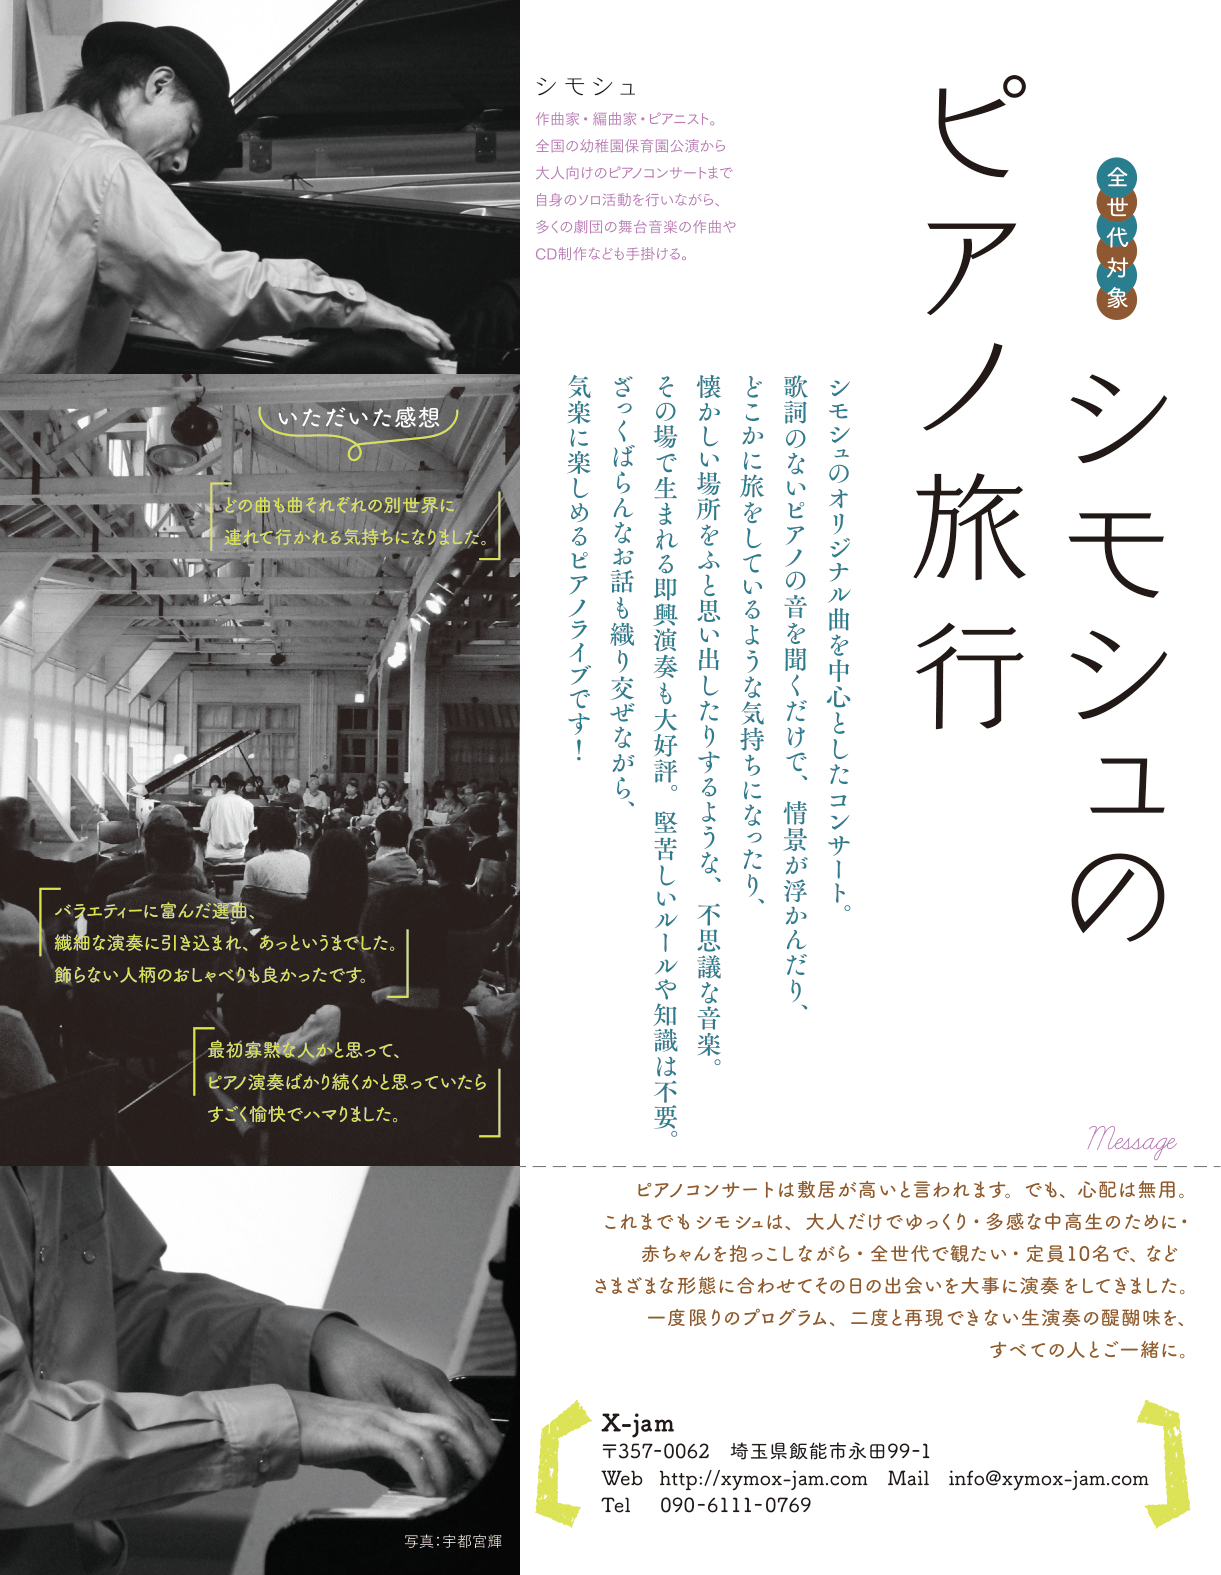 【公演中止】シモシュのシモシュのピアノ旅行～X-jam @ くまもと森都心プラザホール